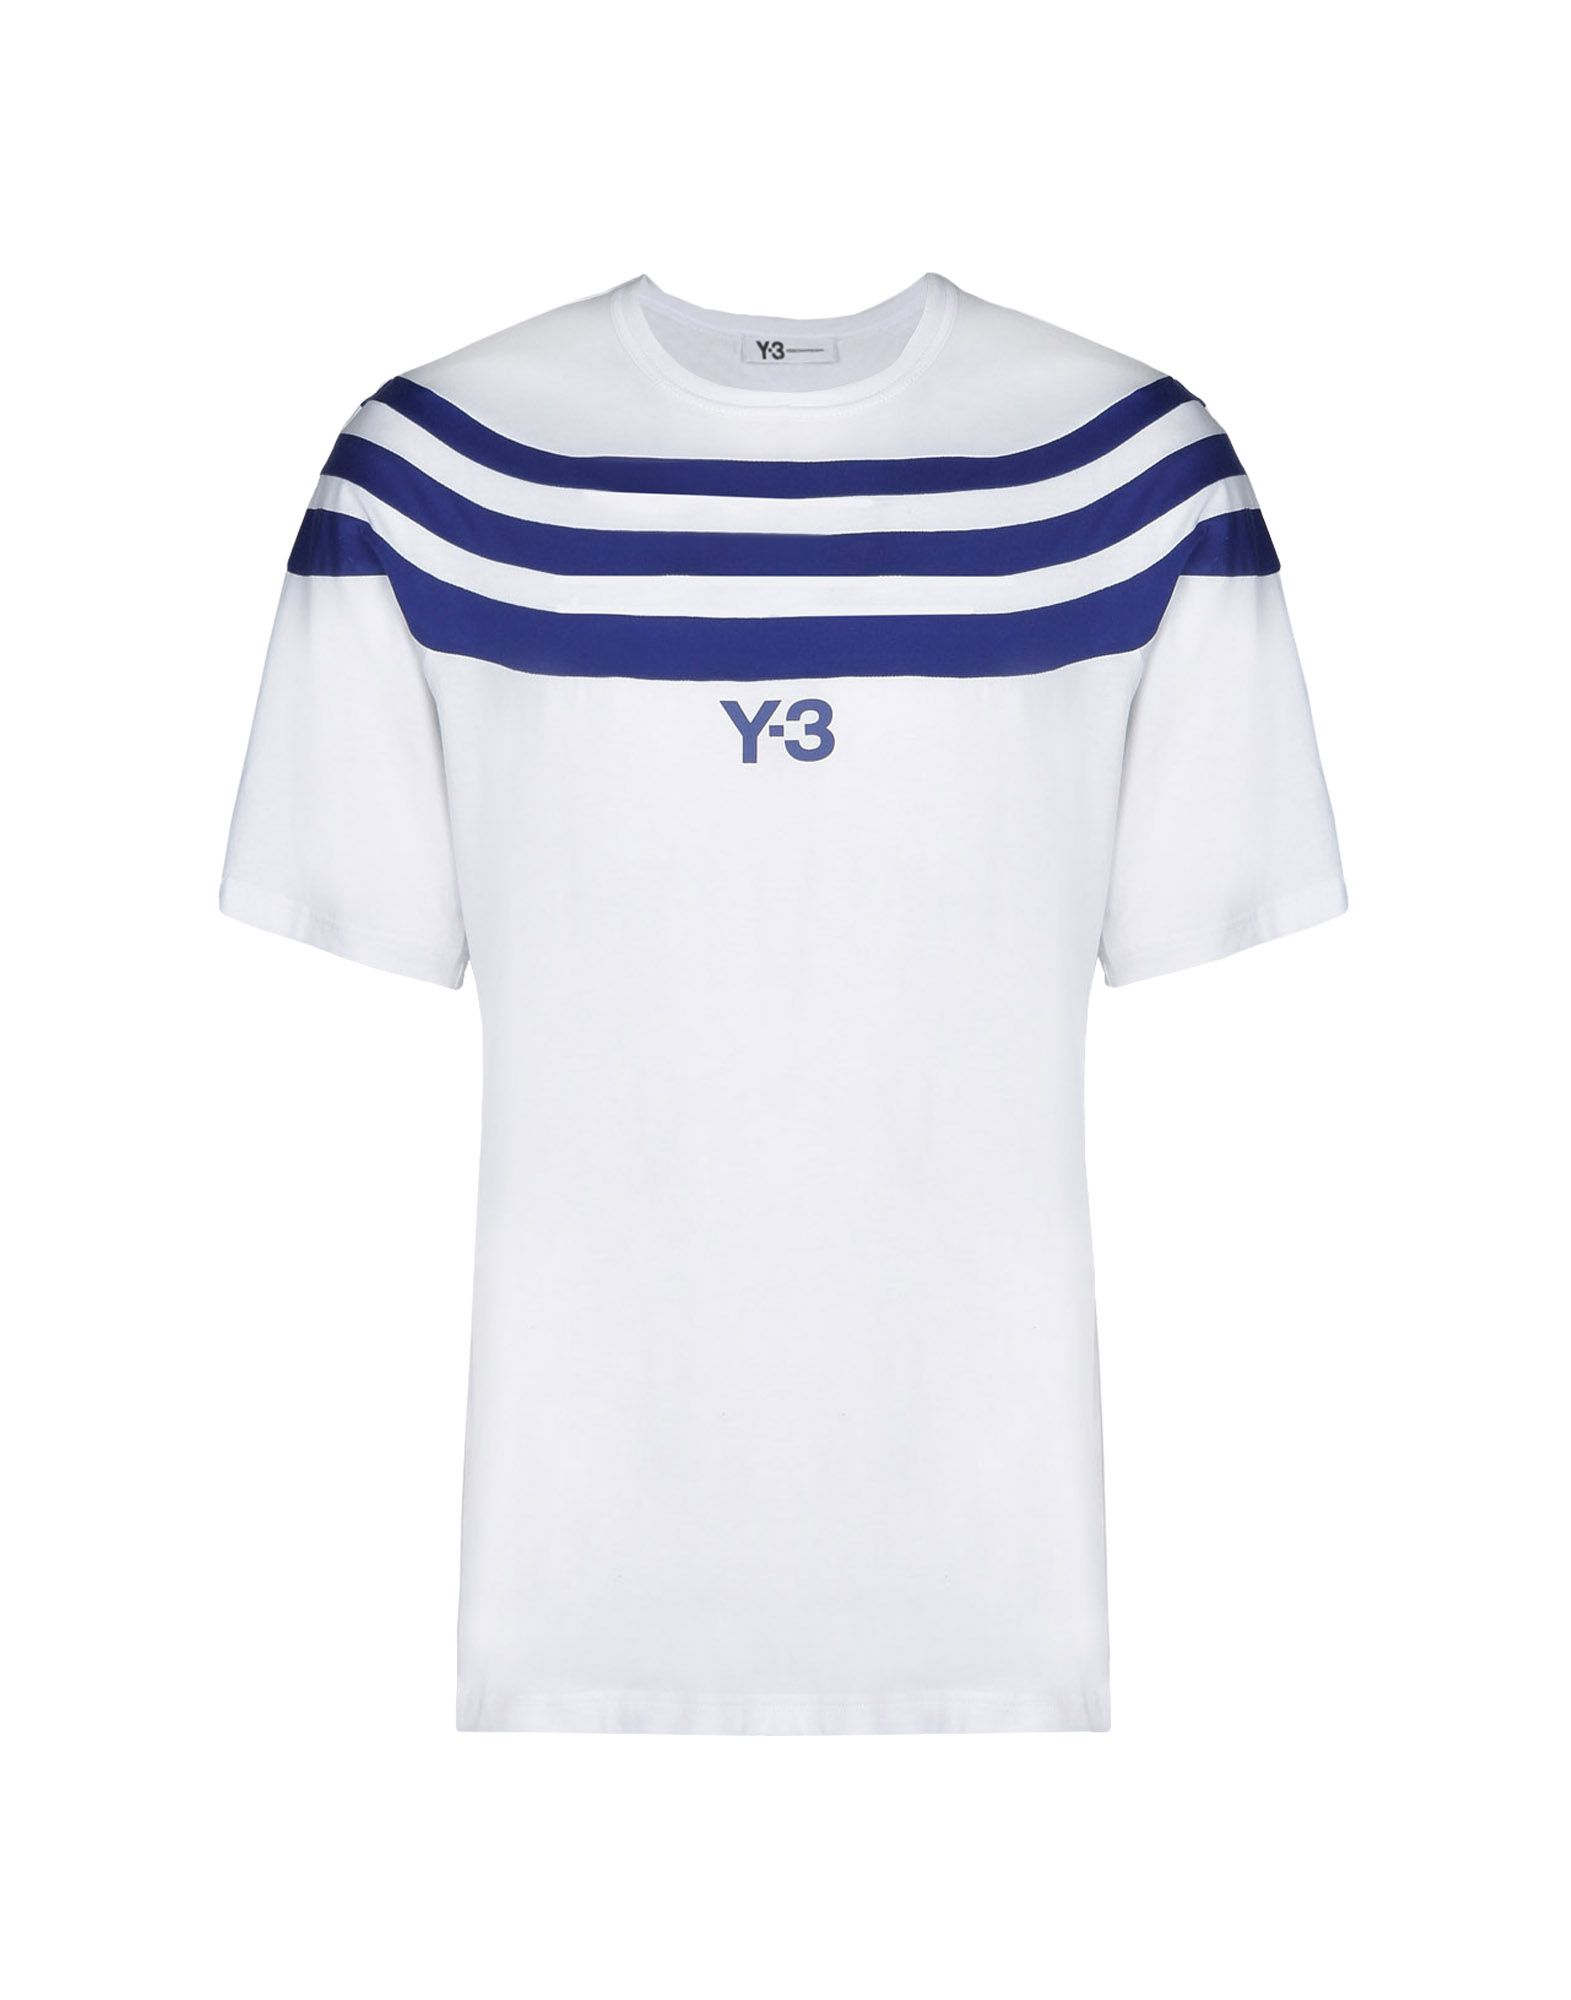 ハイブランドに挑戦しよう!!「Y−３」Tシャツをわかりやすく紹介 